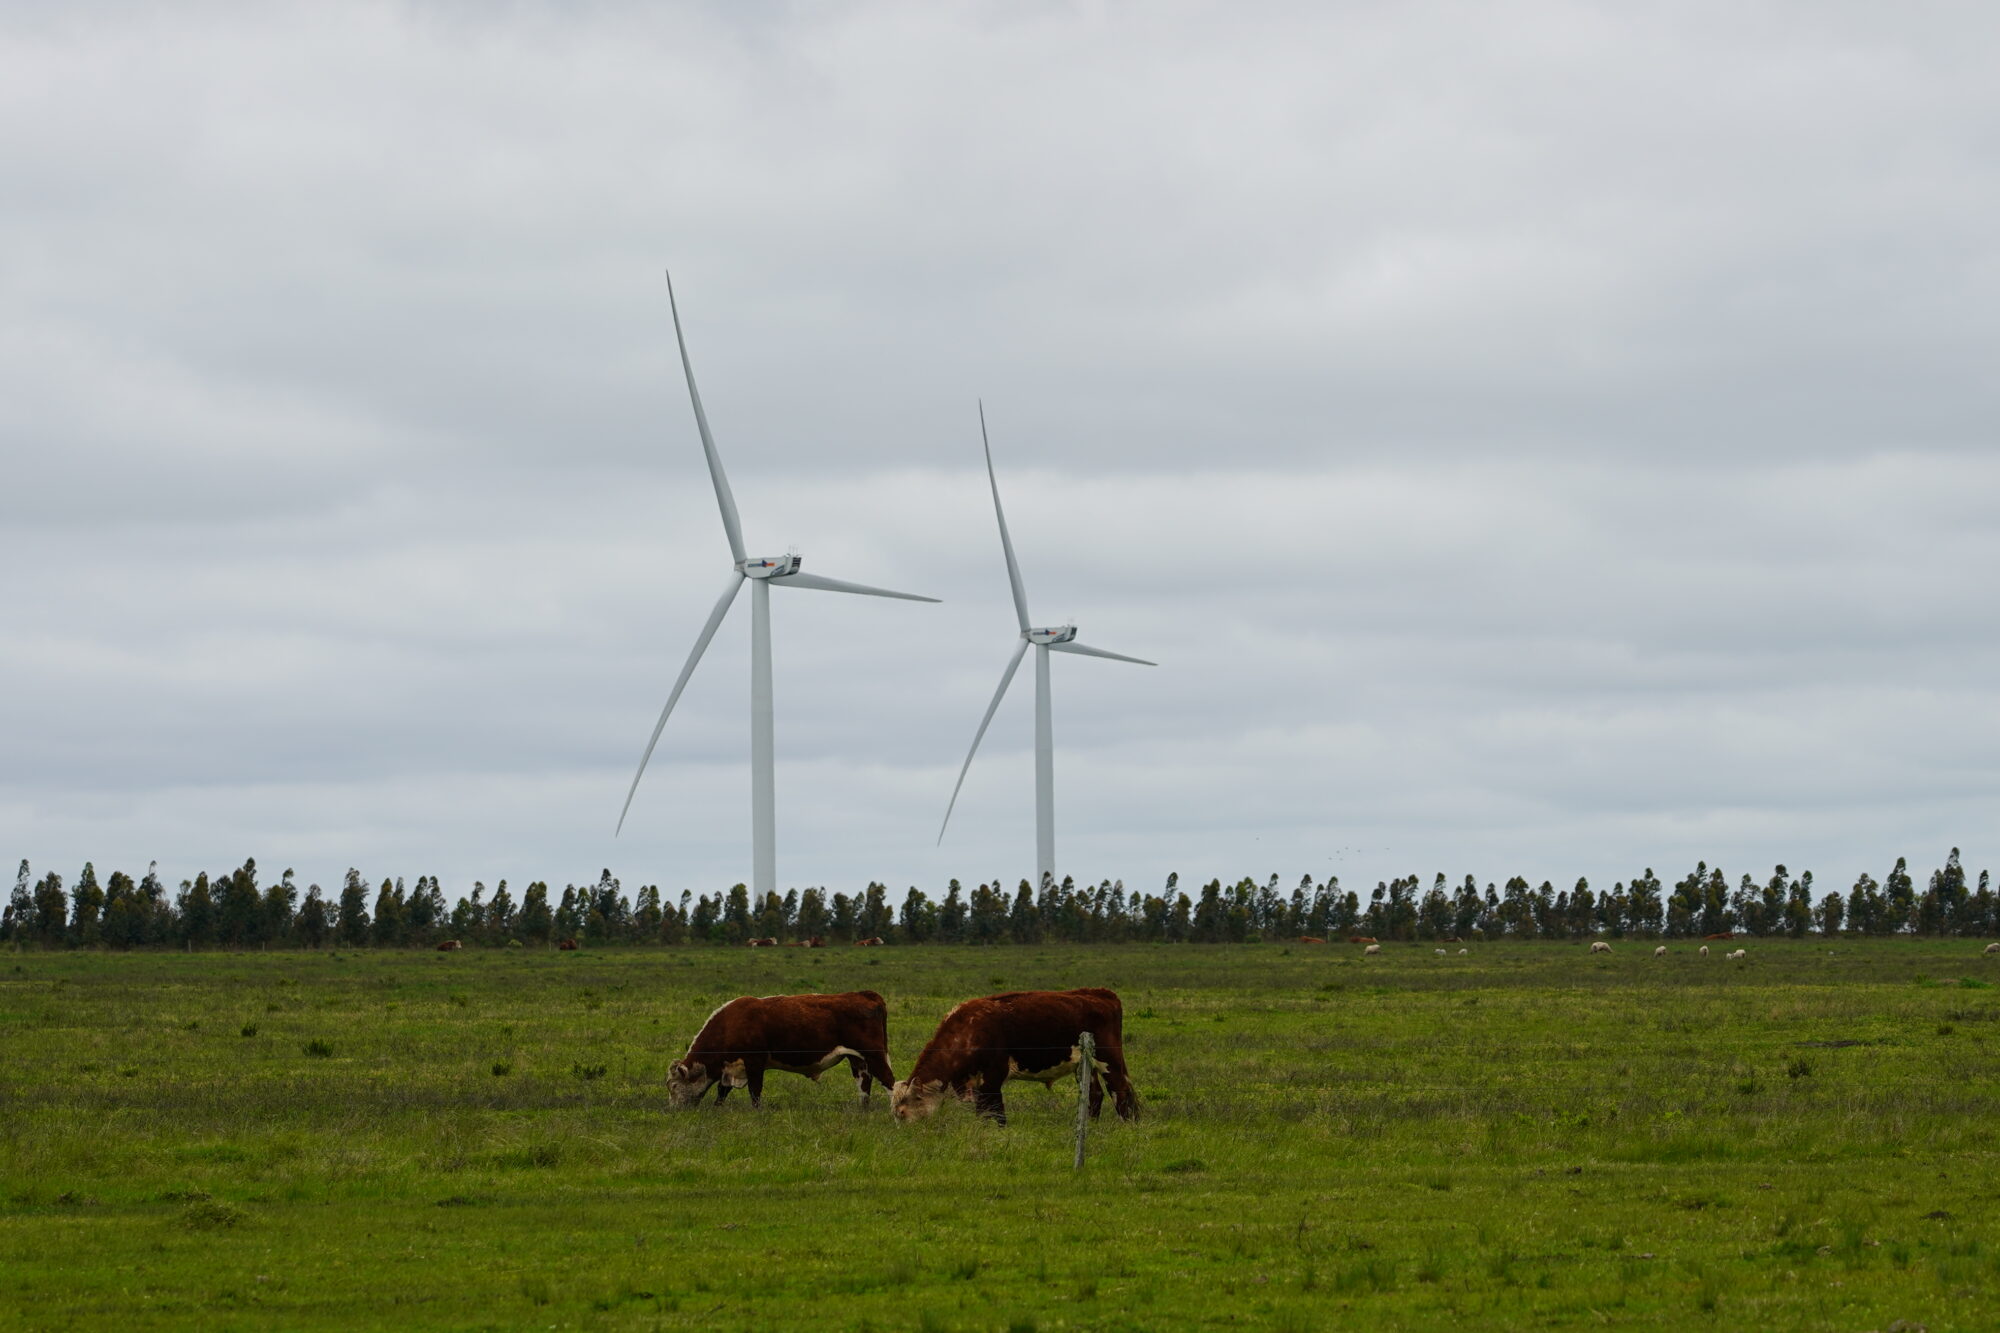 <p>Las energías renovables suministran el 98% de la energía de Uruguay. Aunque el país va en camino hacia la neutralidad de carbono, persisten desafíos en el monitoreo y reducción de emisiones en industrias clave como la de la carne vacuna (Imagen: Diego Casal)</p>